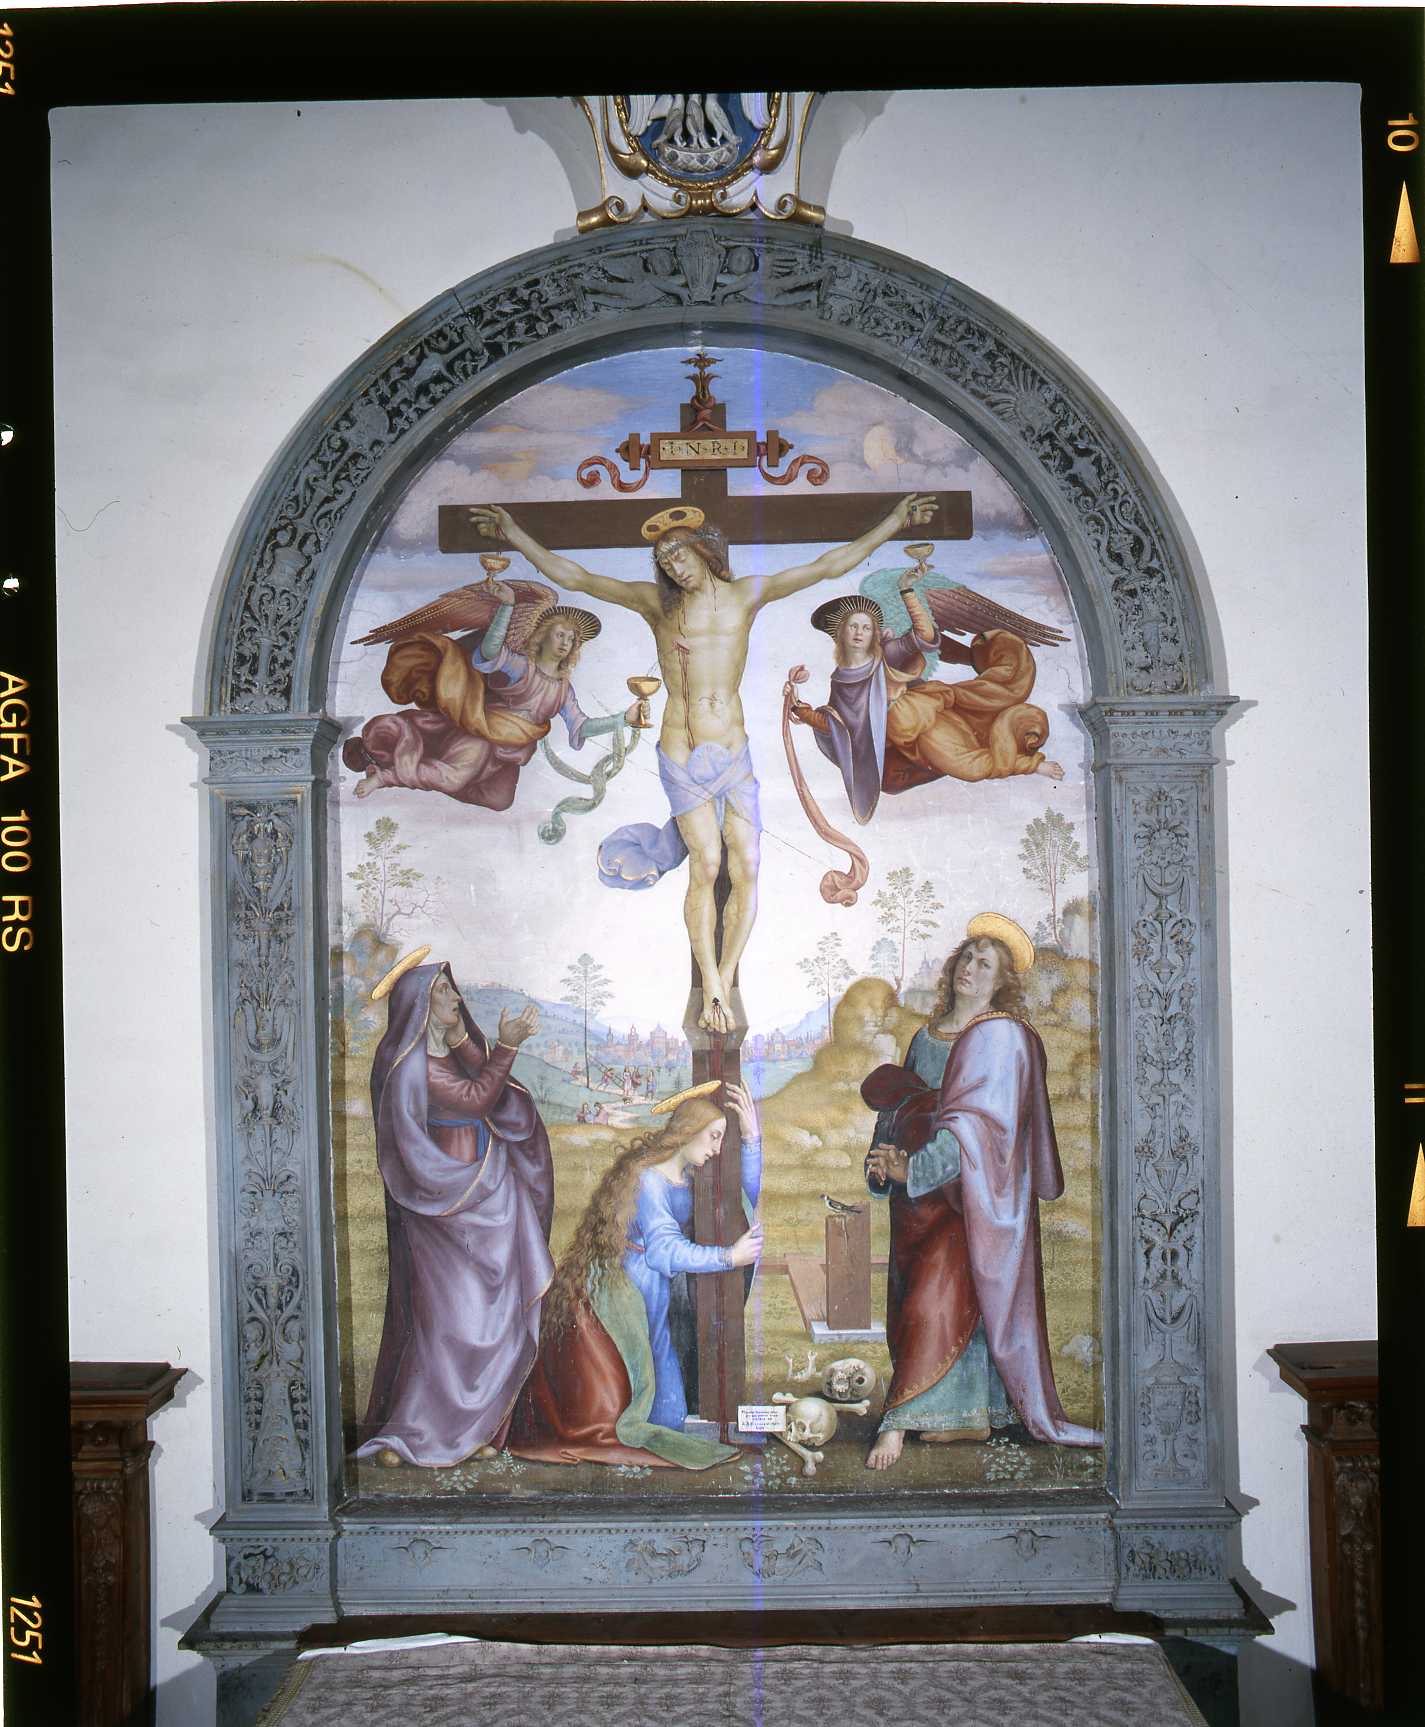 motivi decorativi a candelabra (cornice a impostazione architettonica di dipinto) di Della Bella Piero di Giovanni (fine/ inizio secc. XV/ XVI)